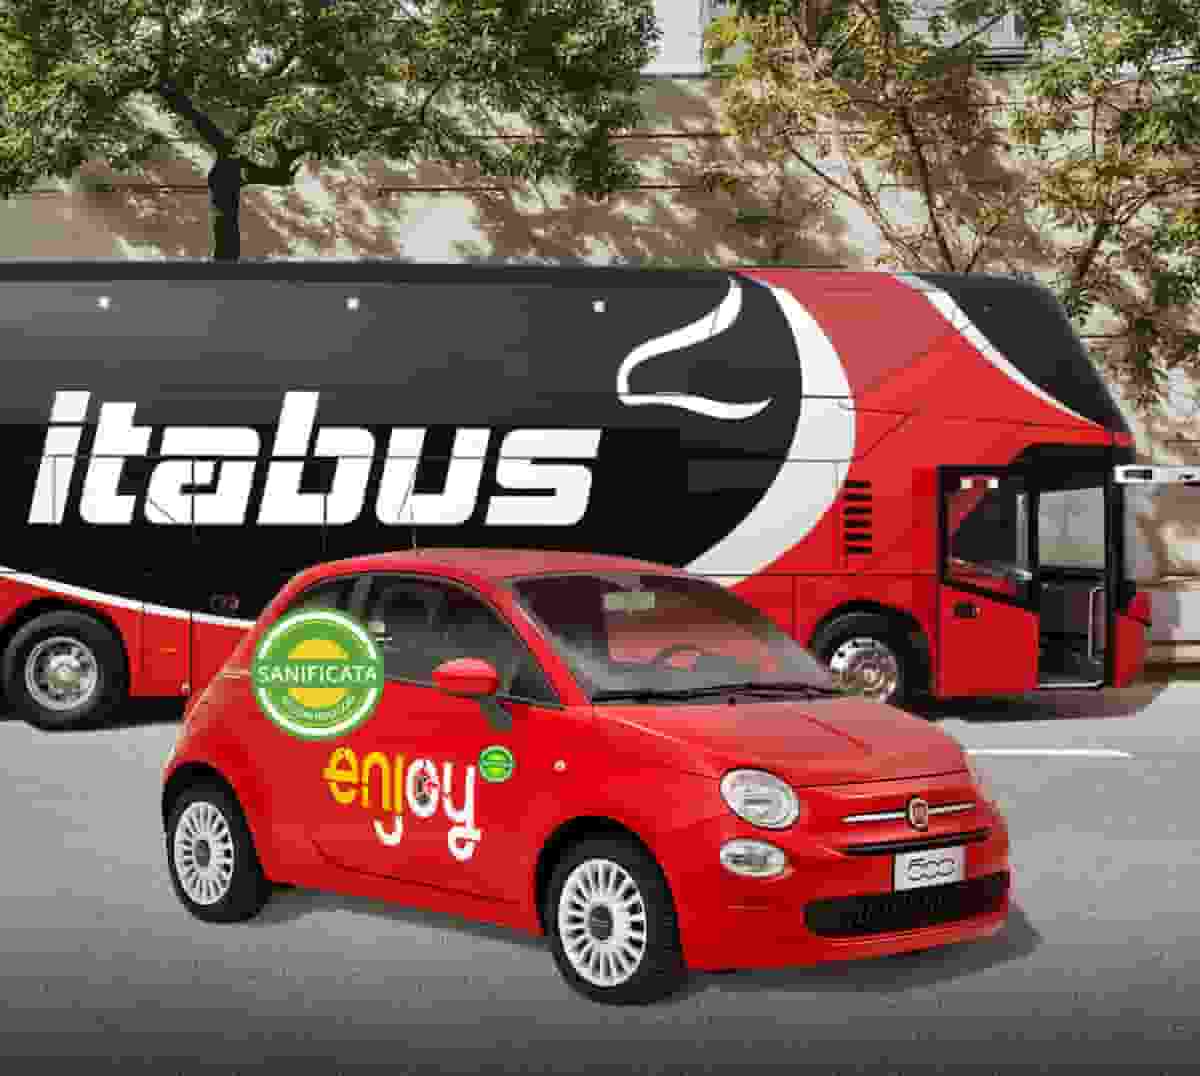 Enjoy e Itabus, accordo per una mobilità integrata e sostenibile tra bus e car sharing